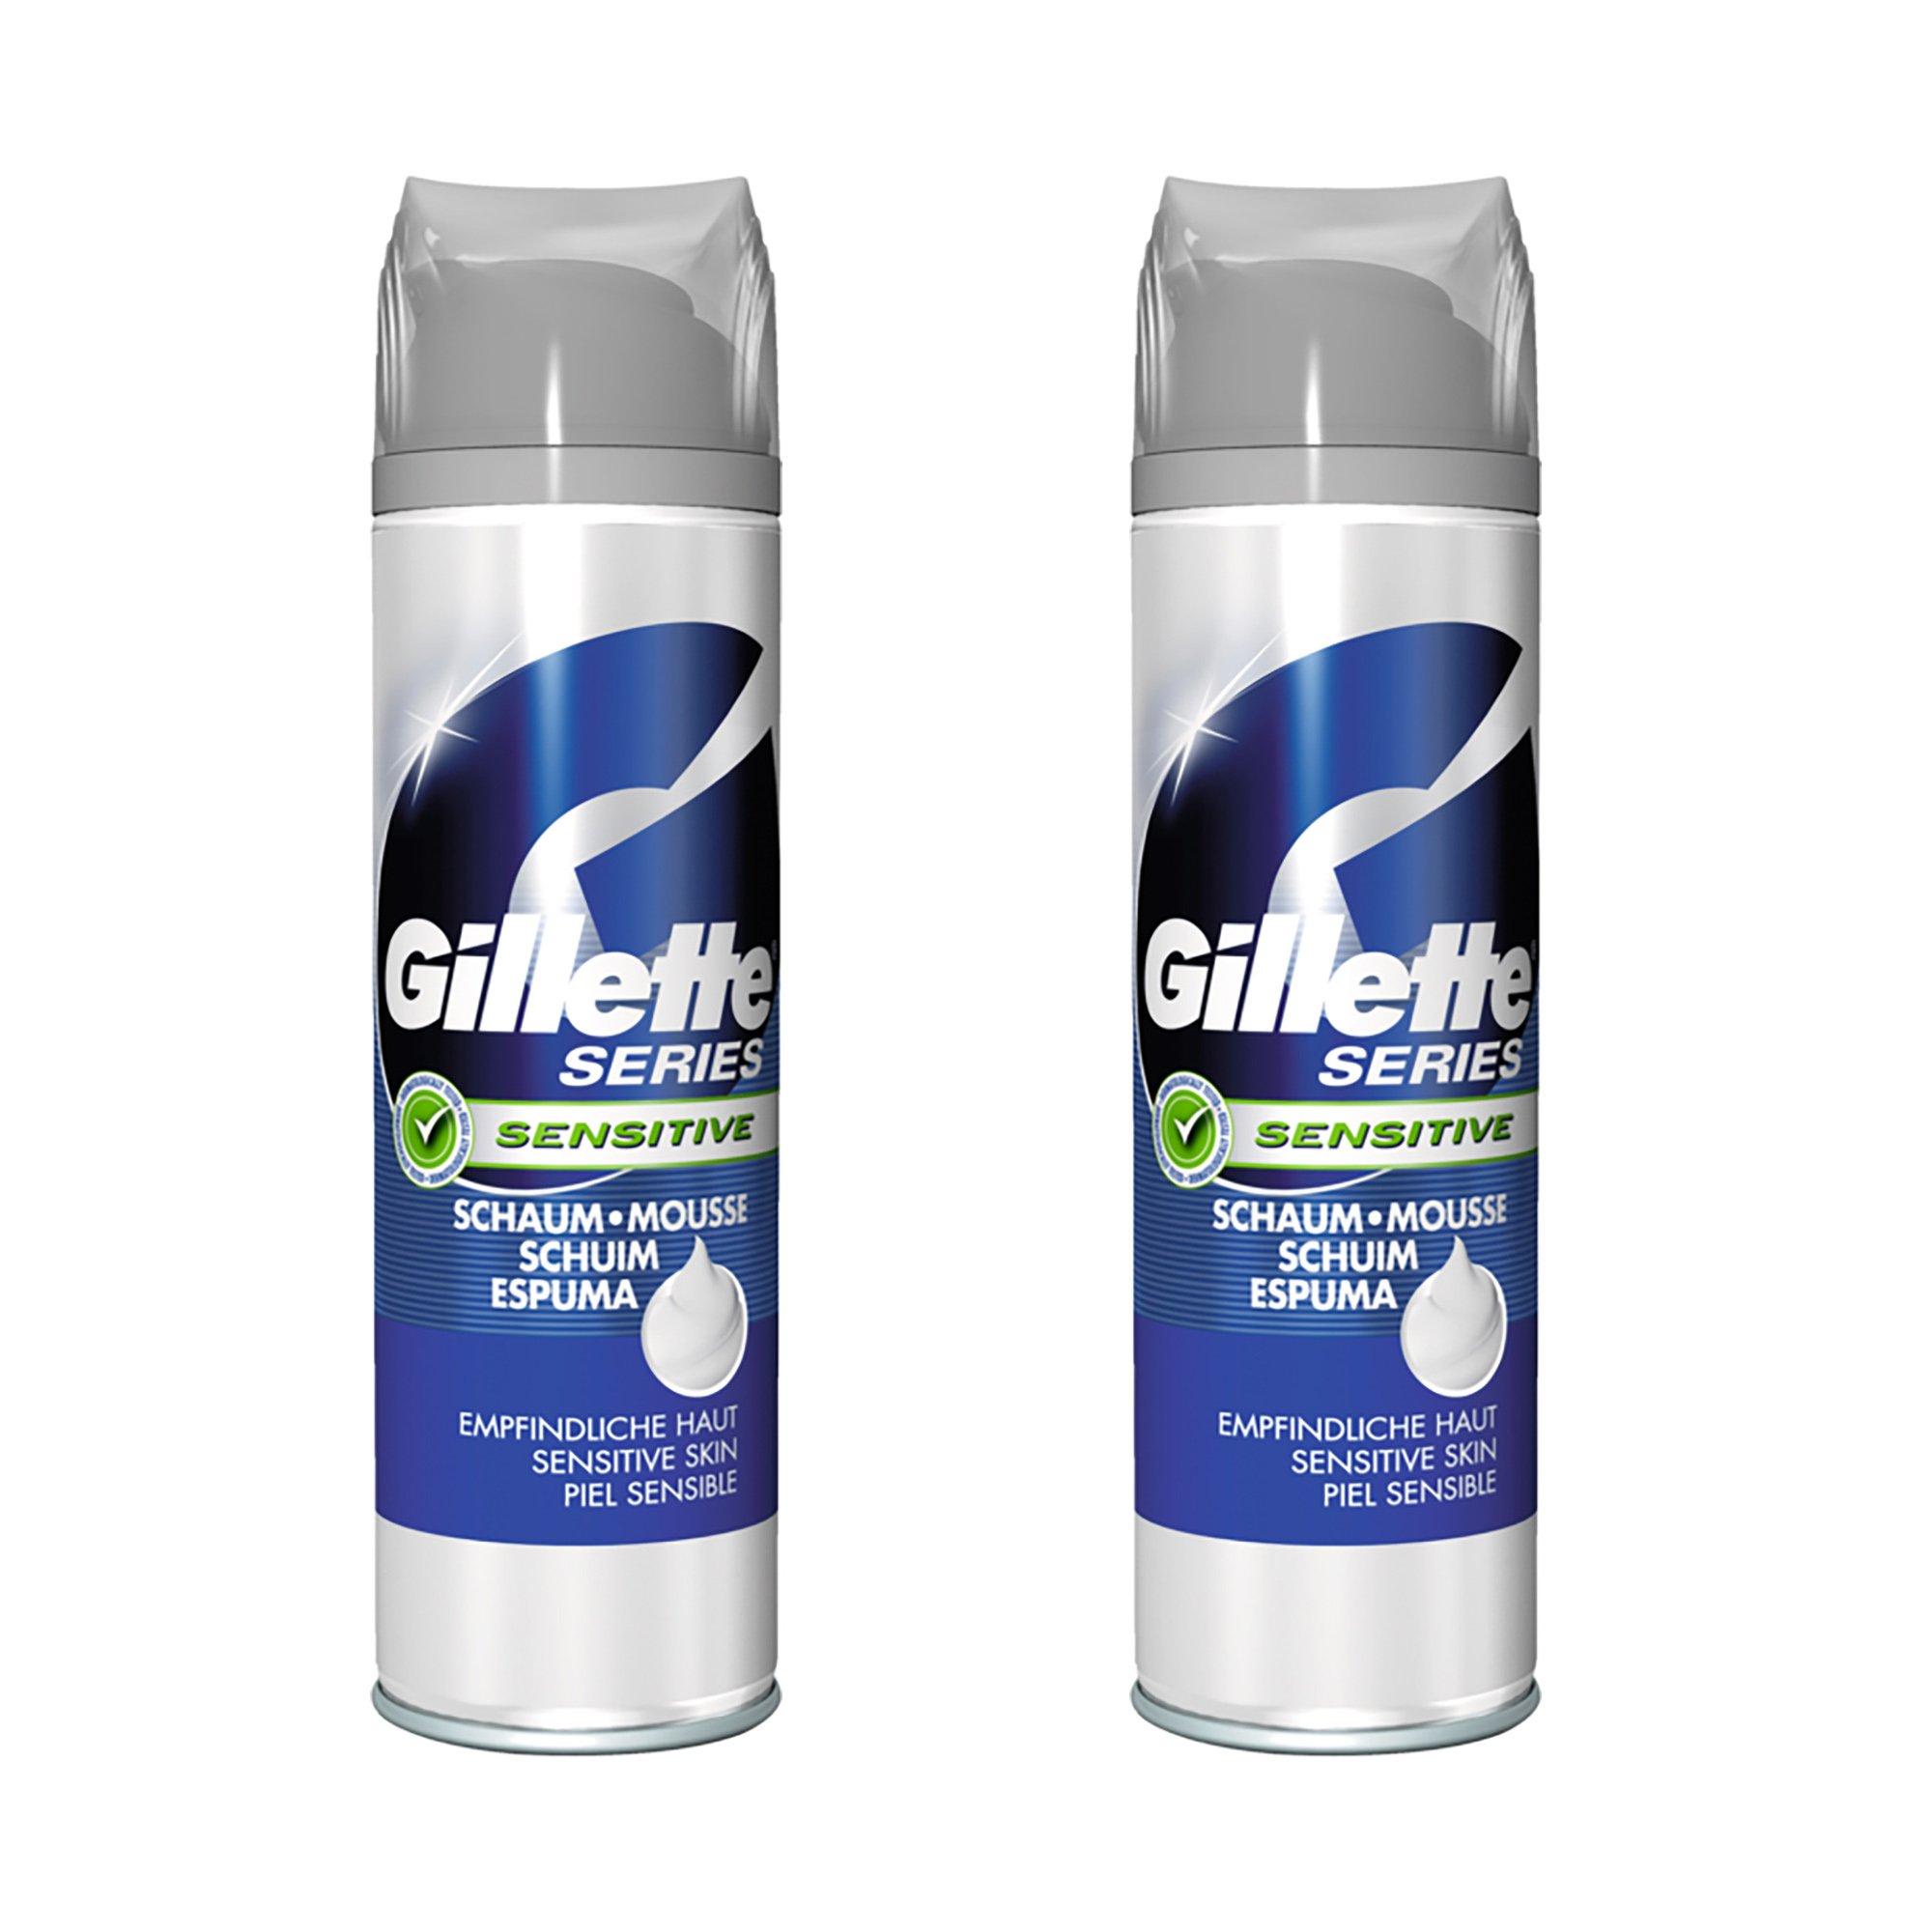 Image of Gillette Series Schaum für empfindliche Haut DUO - 2x250ml